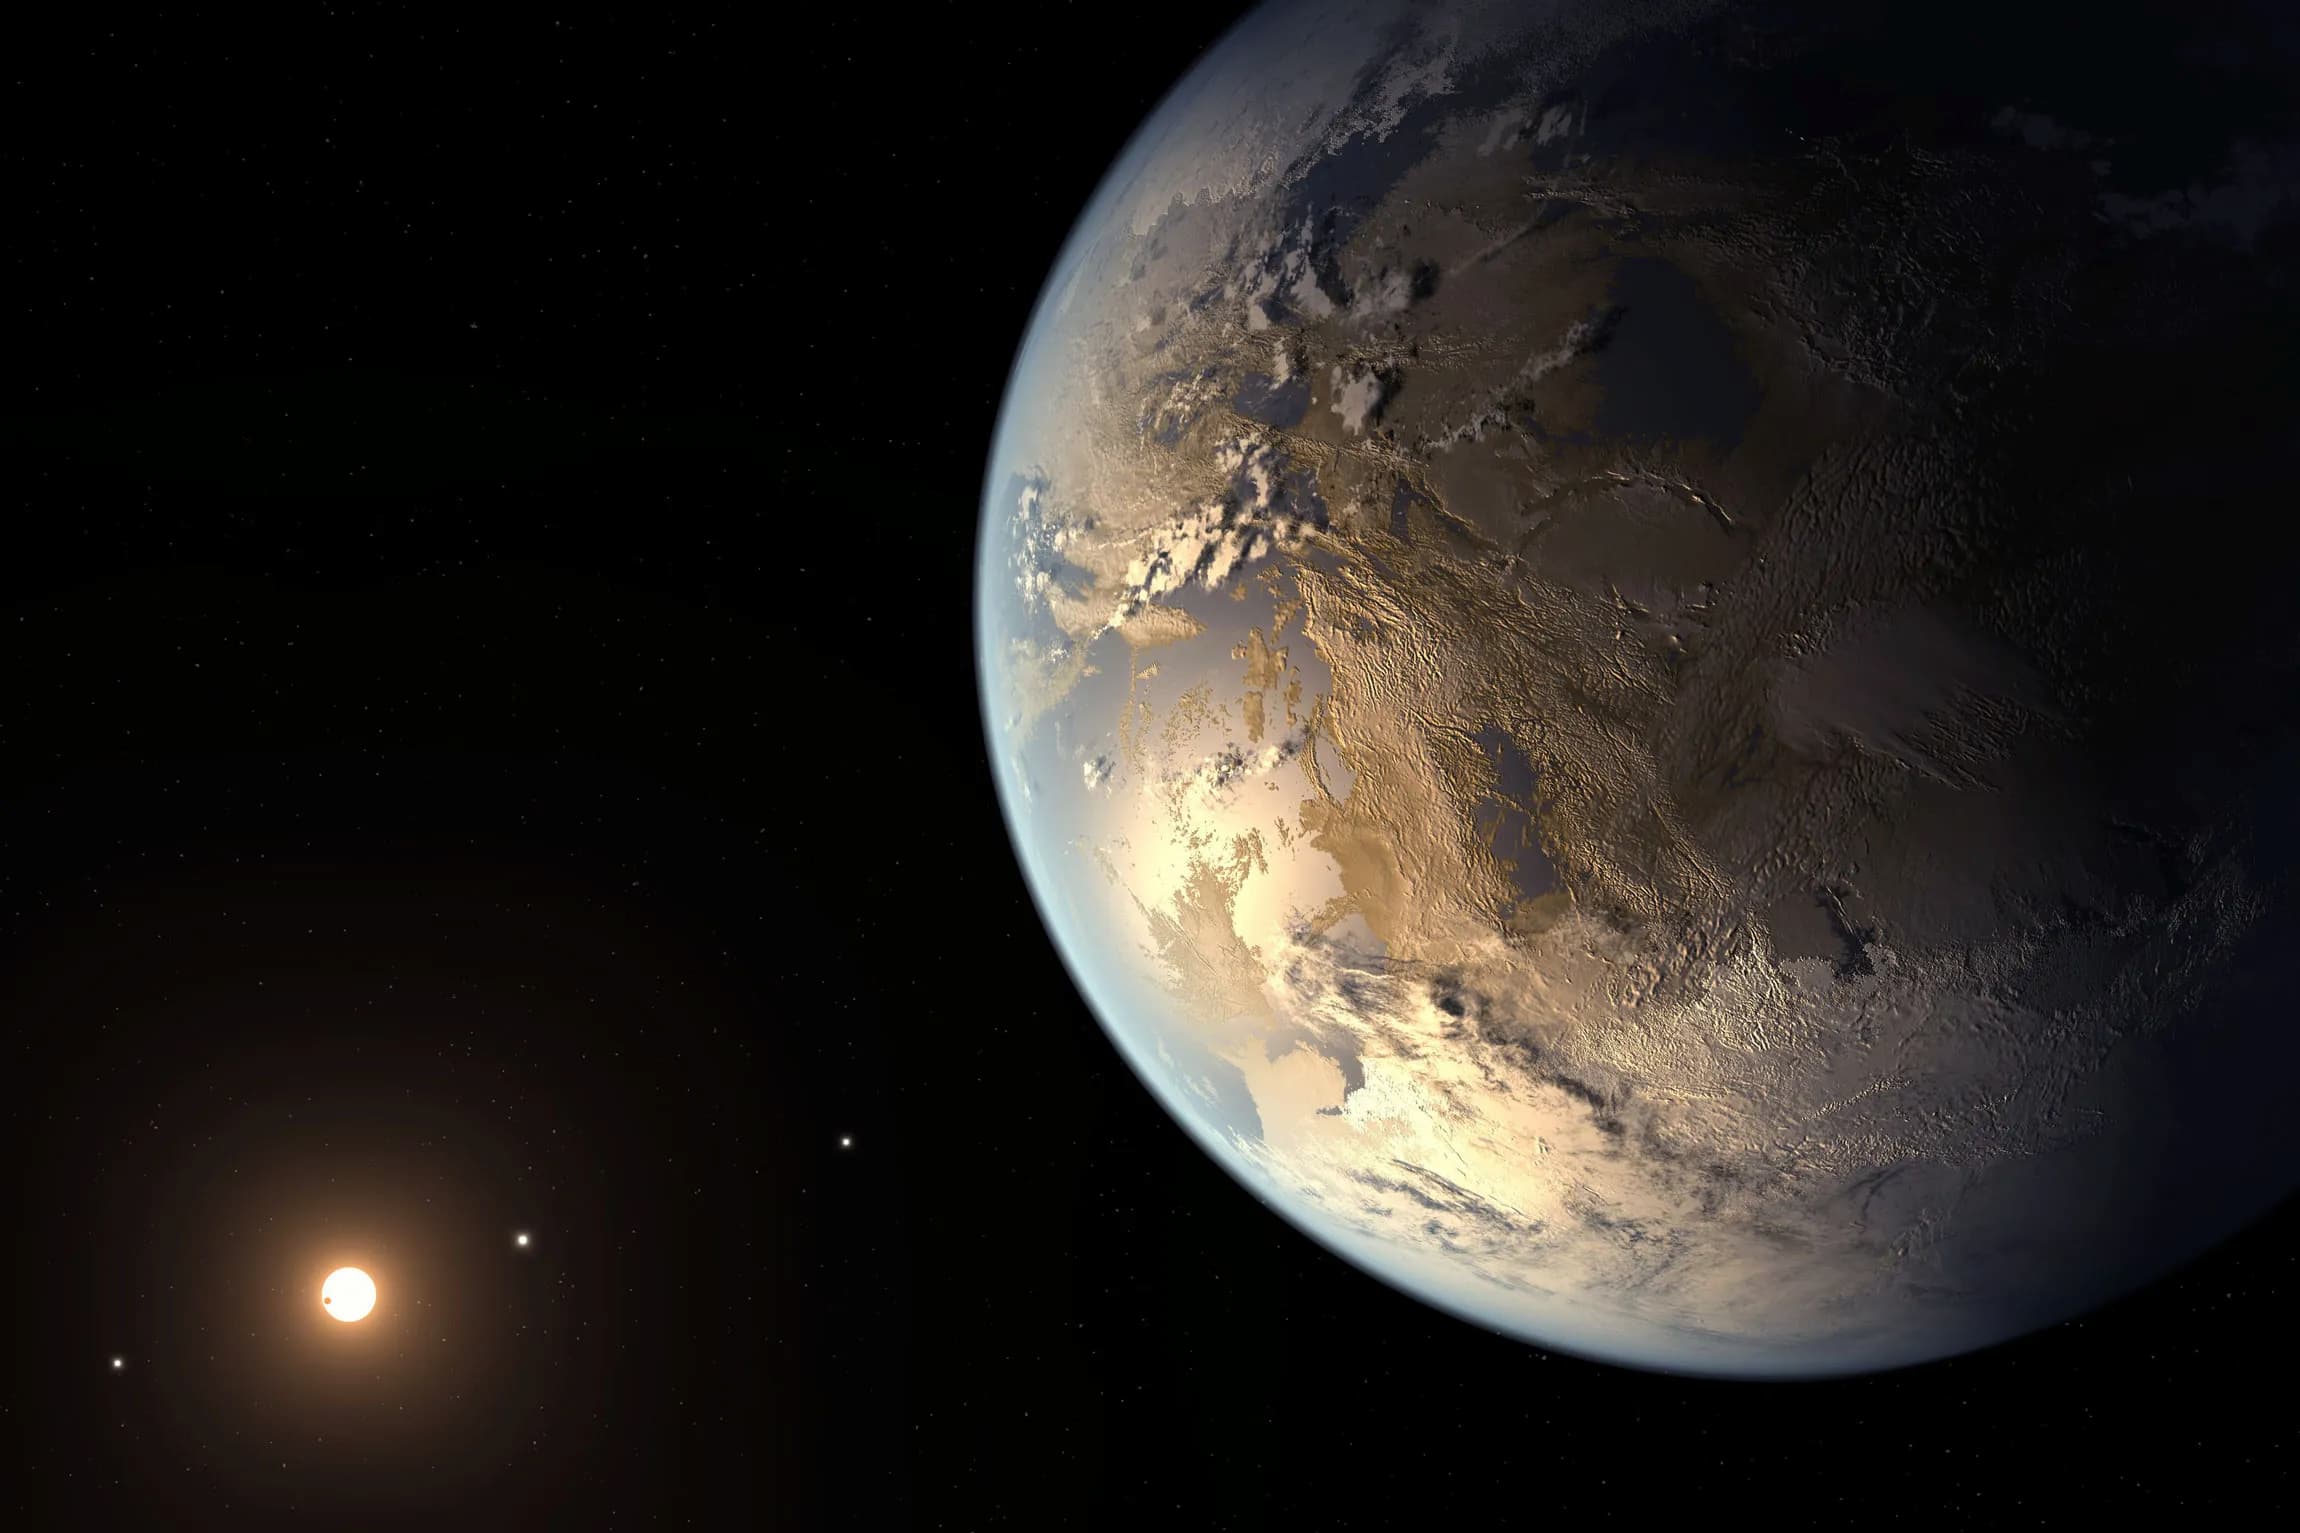 Impression d'artiste de l'exoplanète rocheuse Kepler-186f, située dans la zone habitable de son étoile. © Nasa